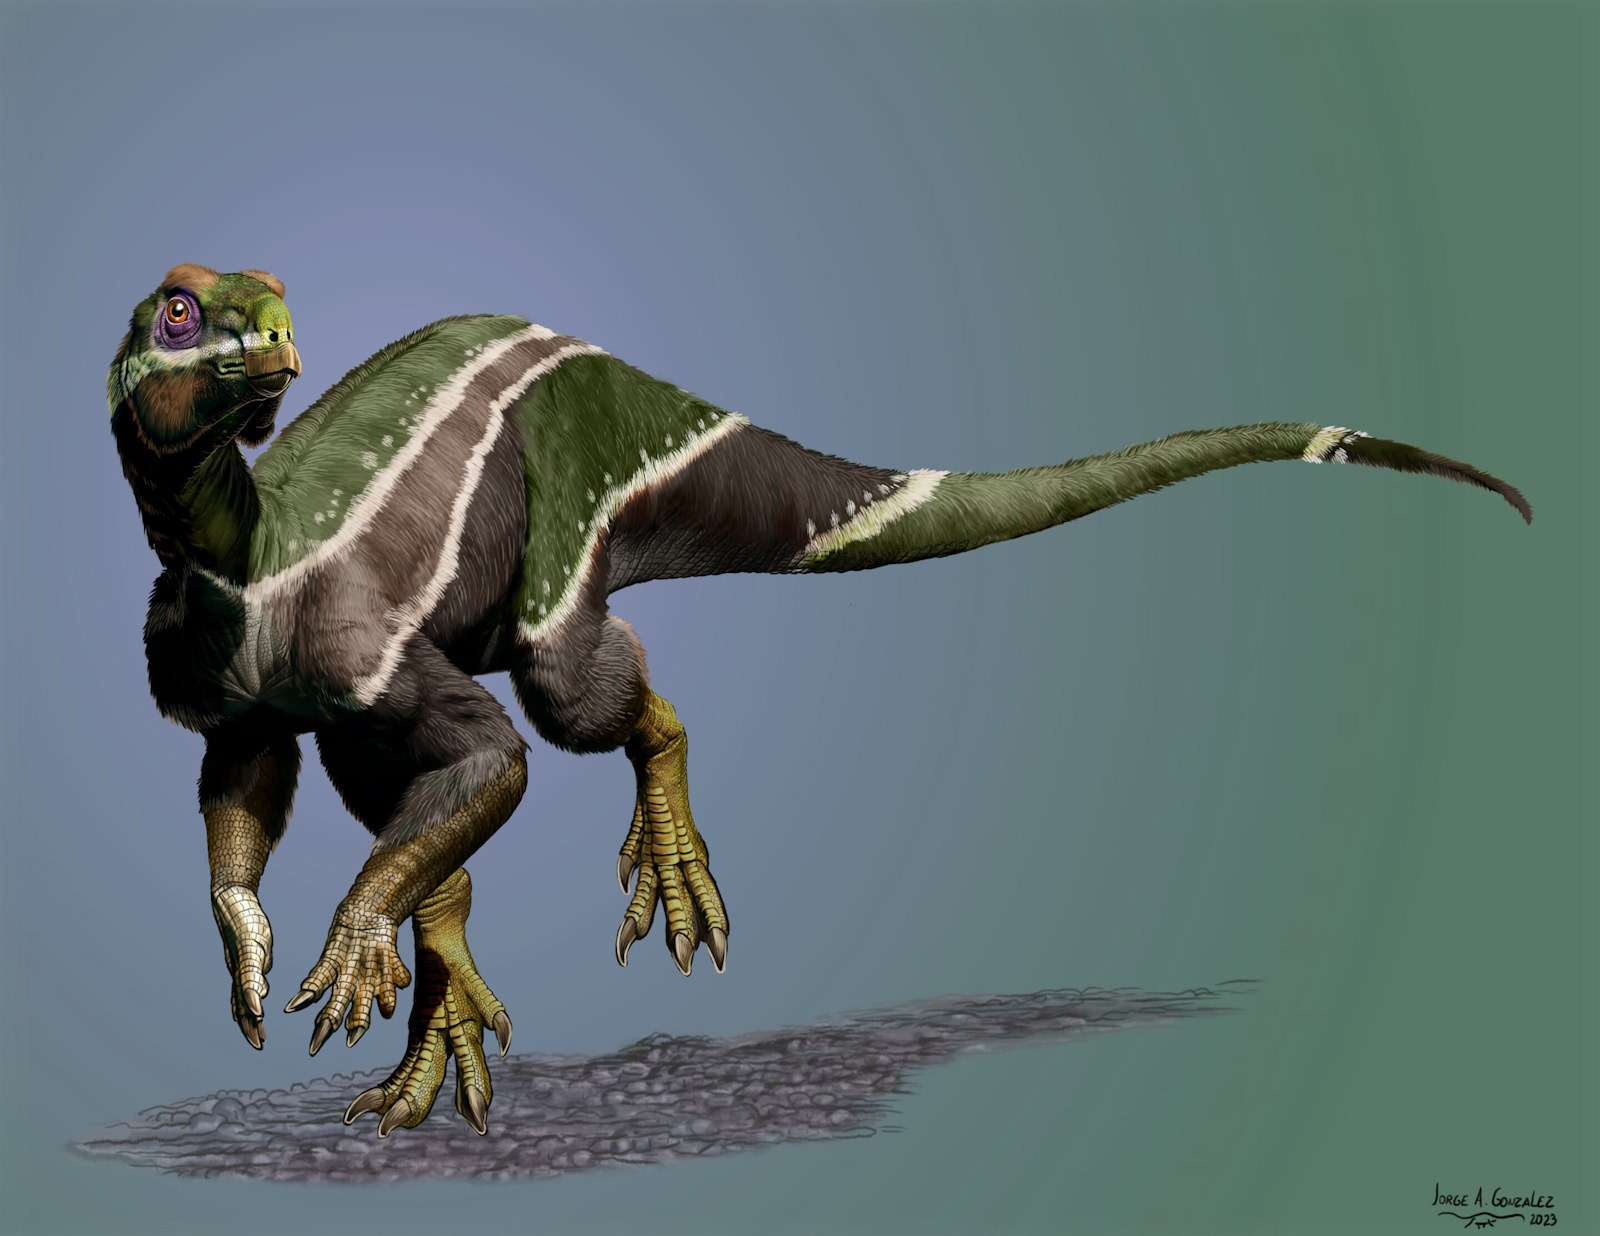 Un dinosaure qui apporte sa patte à l'évolution - Sciences et Avenir